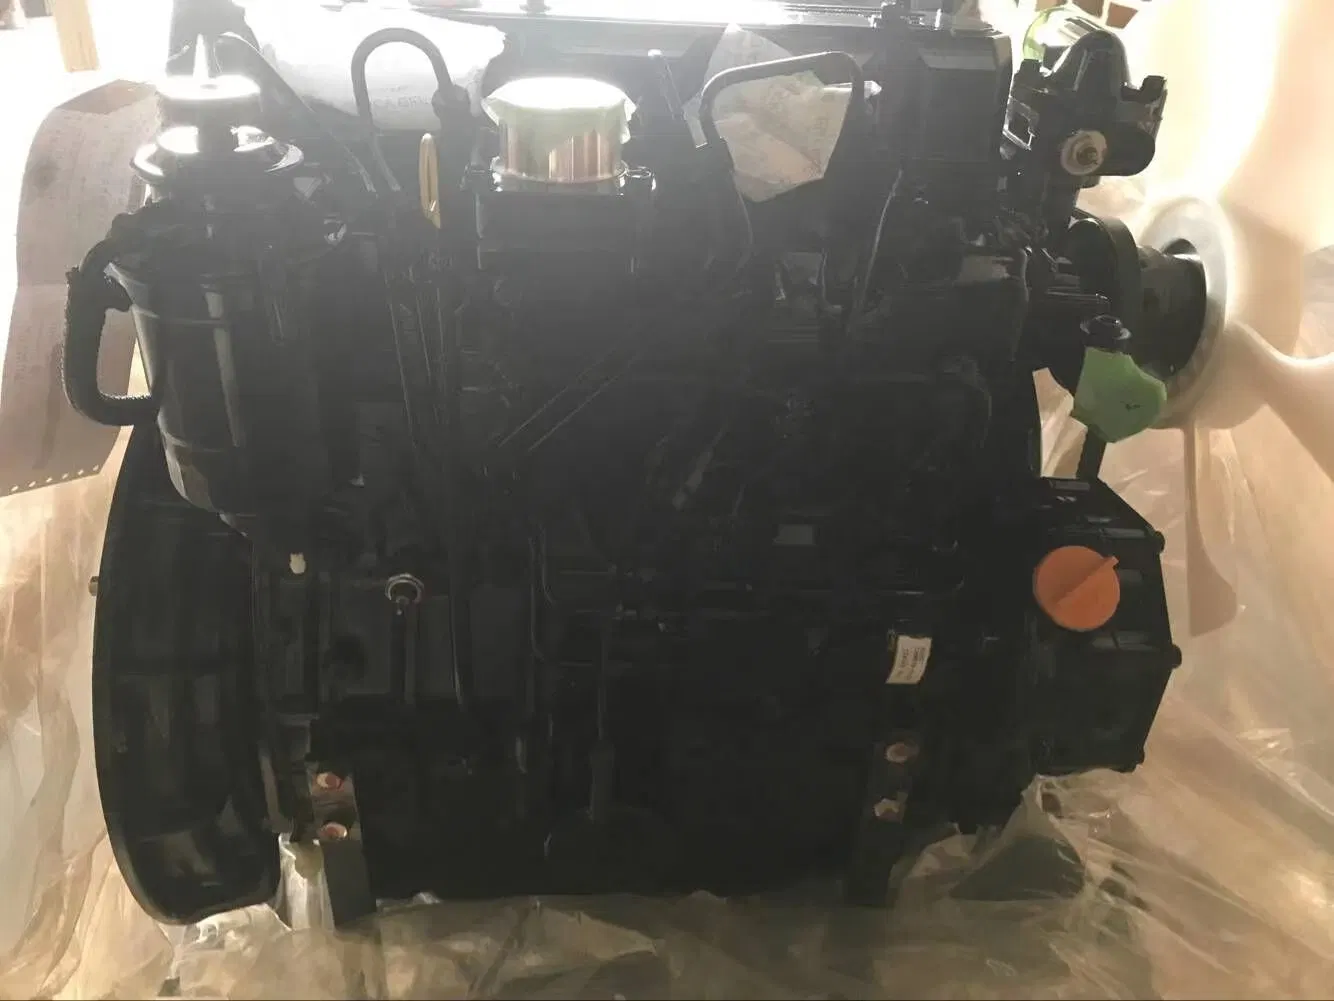 Os motores Yanmar Diesel 2tnv98 são usados em motores marítimos Mini Digger Auto Parts (peças automáticas do digger